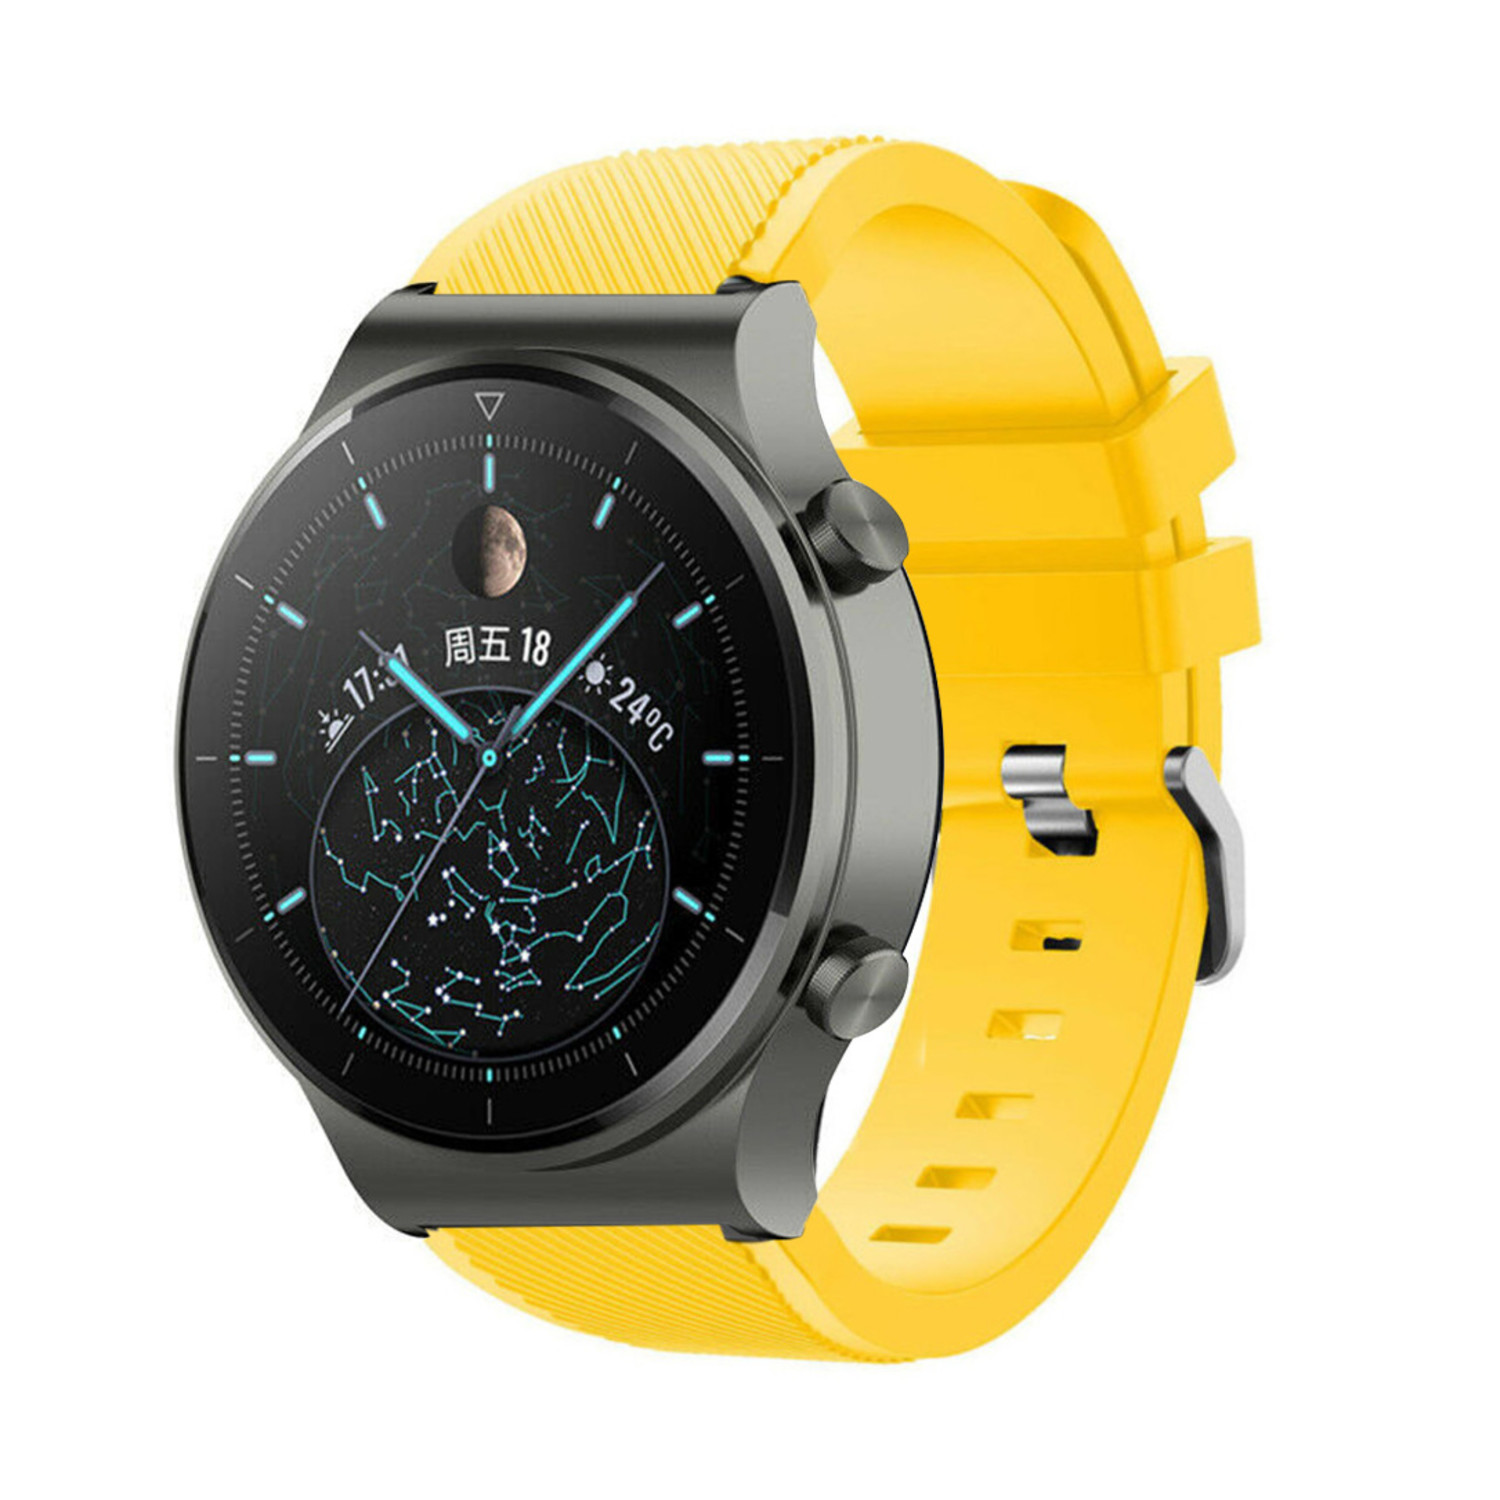 Correa silicona Huawei Watch GT 2 (amarillo) Correasmartwatch.es